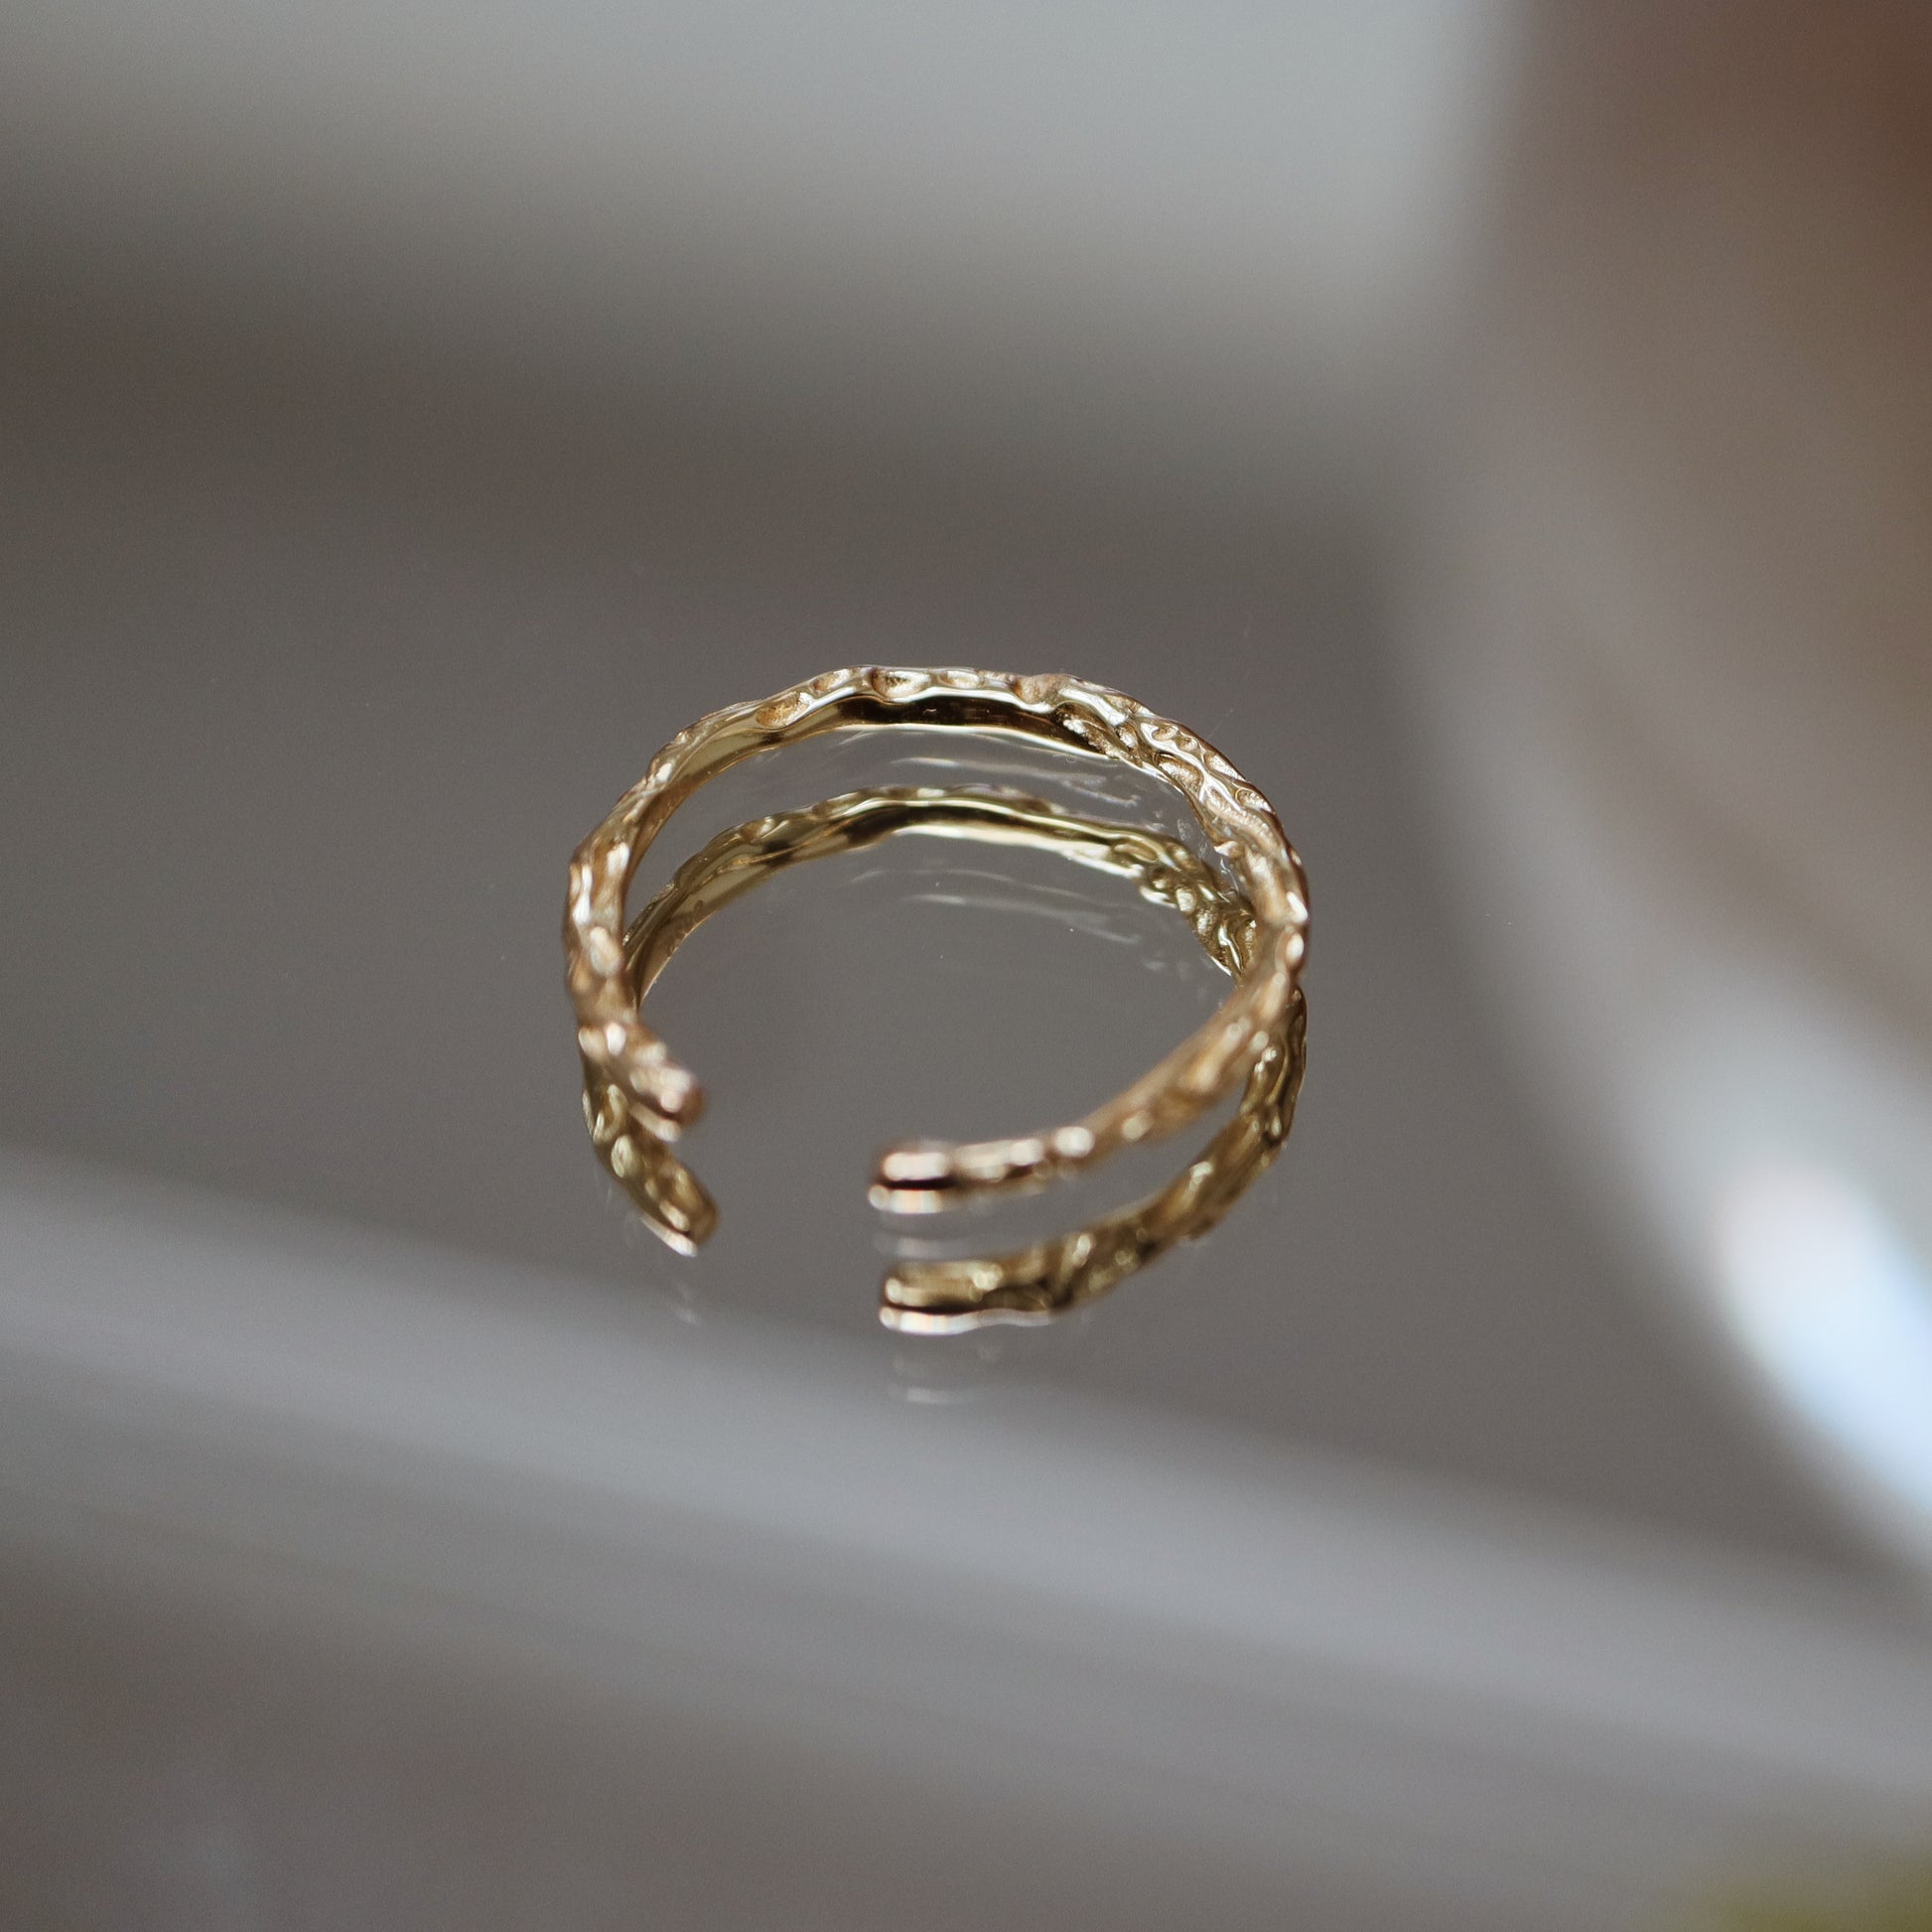 Irregular Gold Band Ring Abu Dhabi UAE